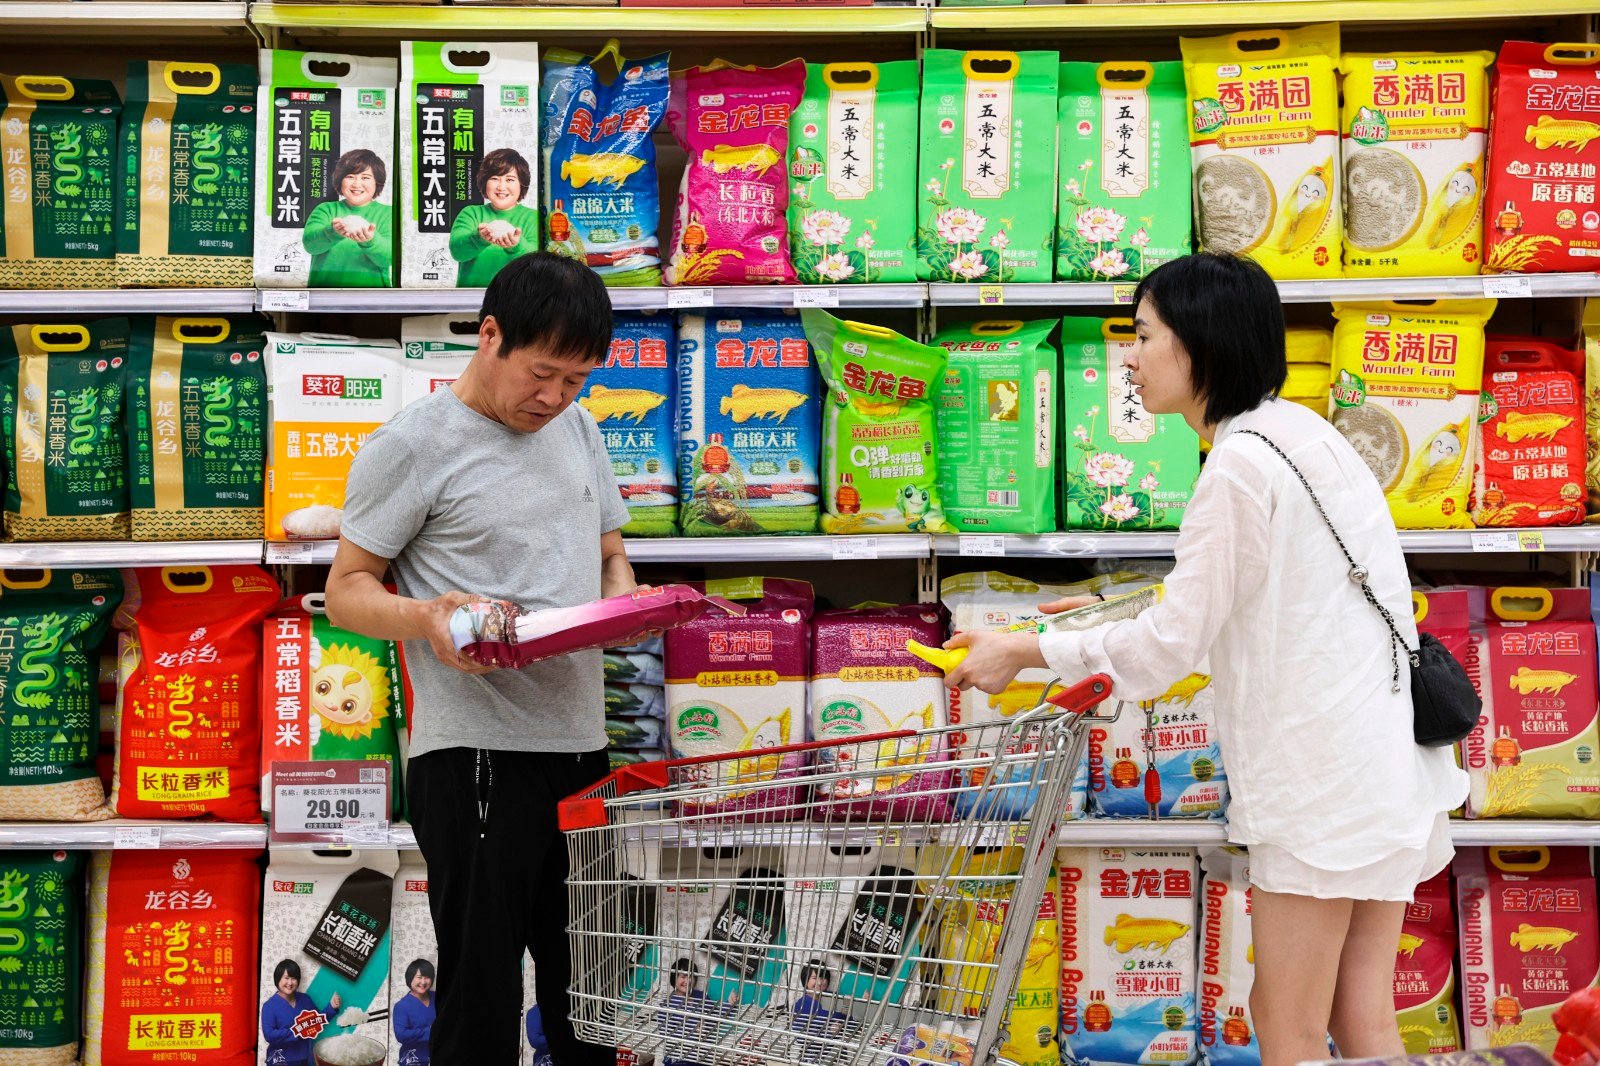 消费者在超市选购大米(图片由cnsphoto提供)